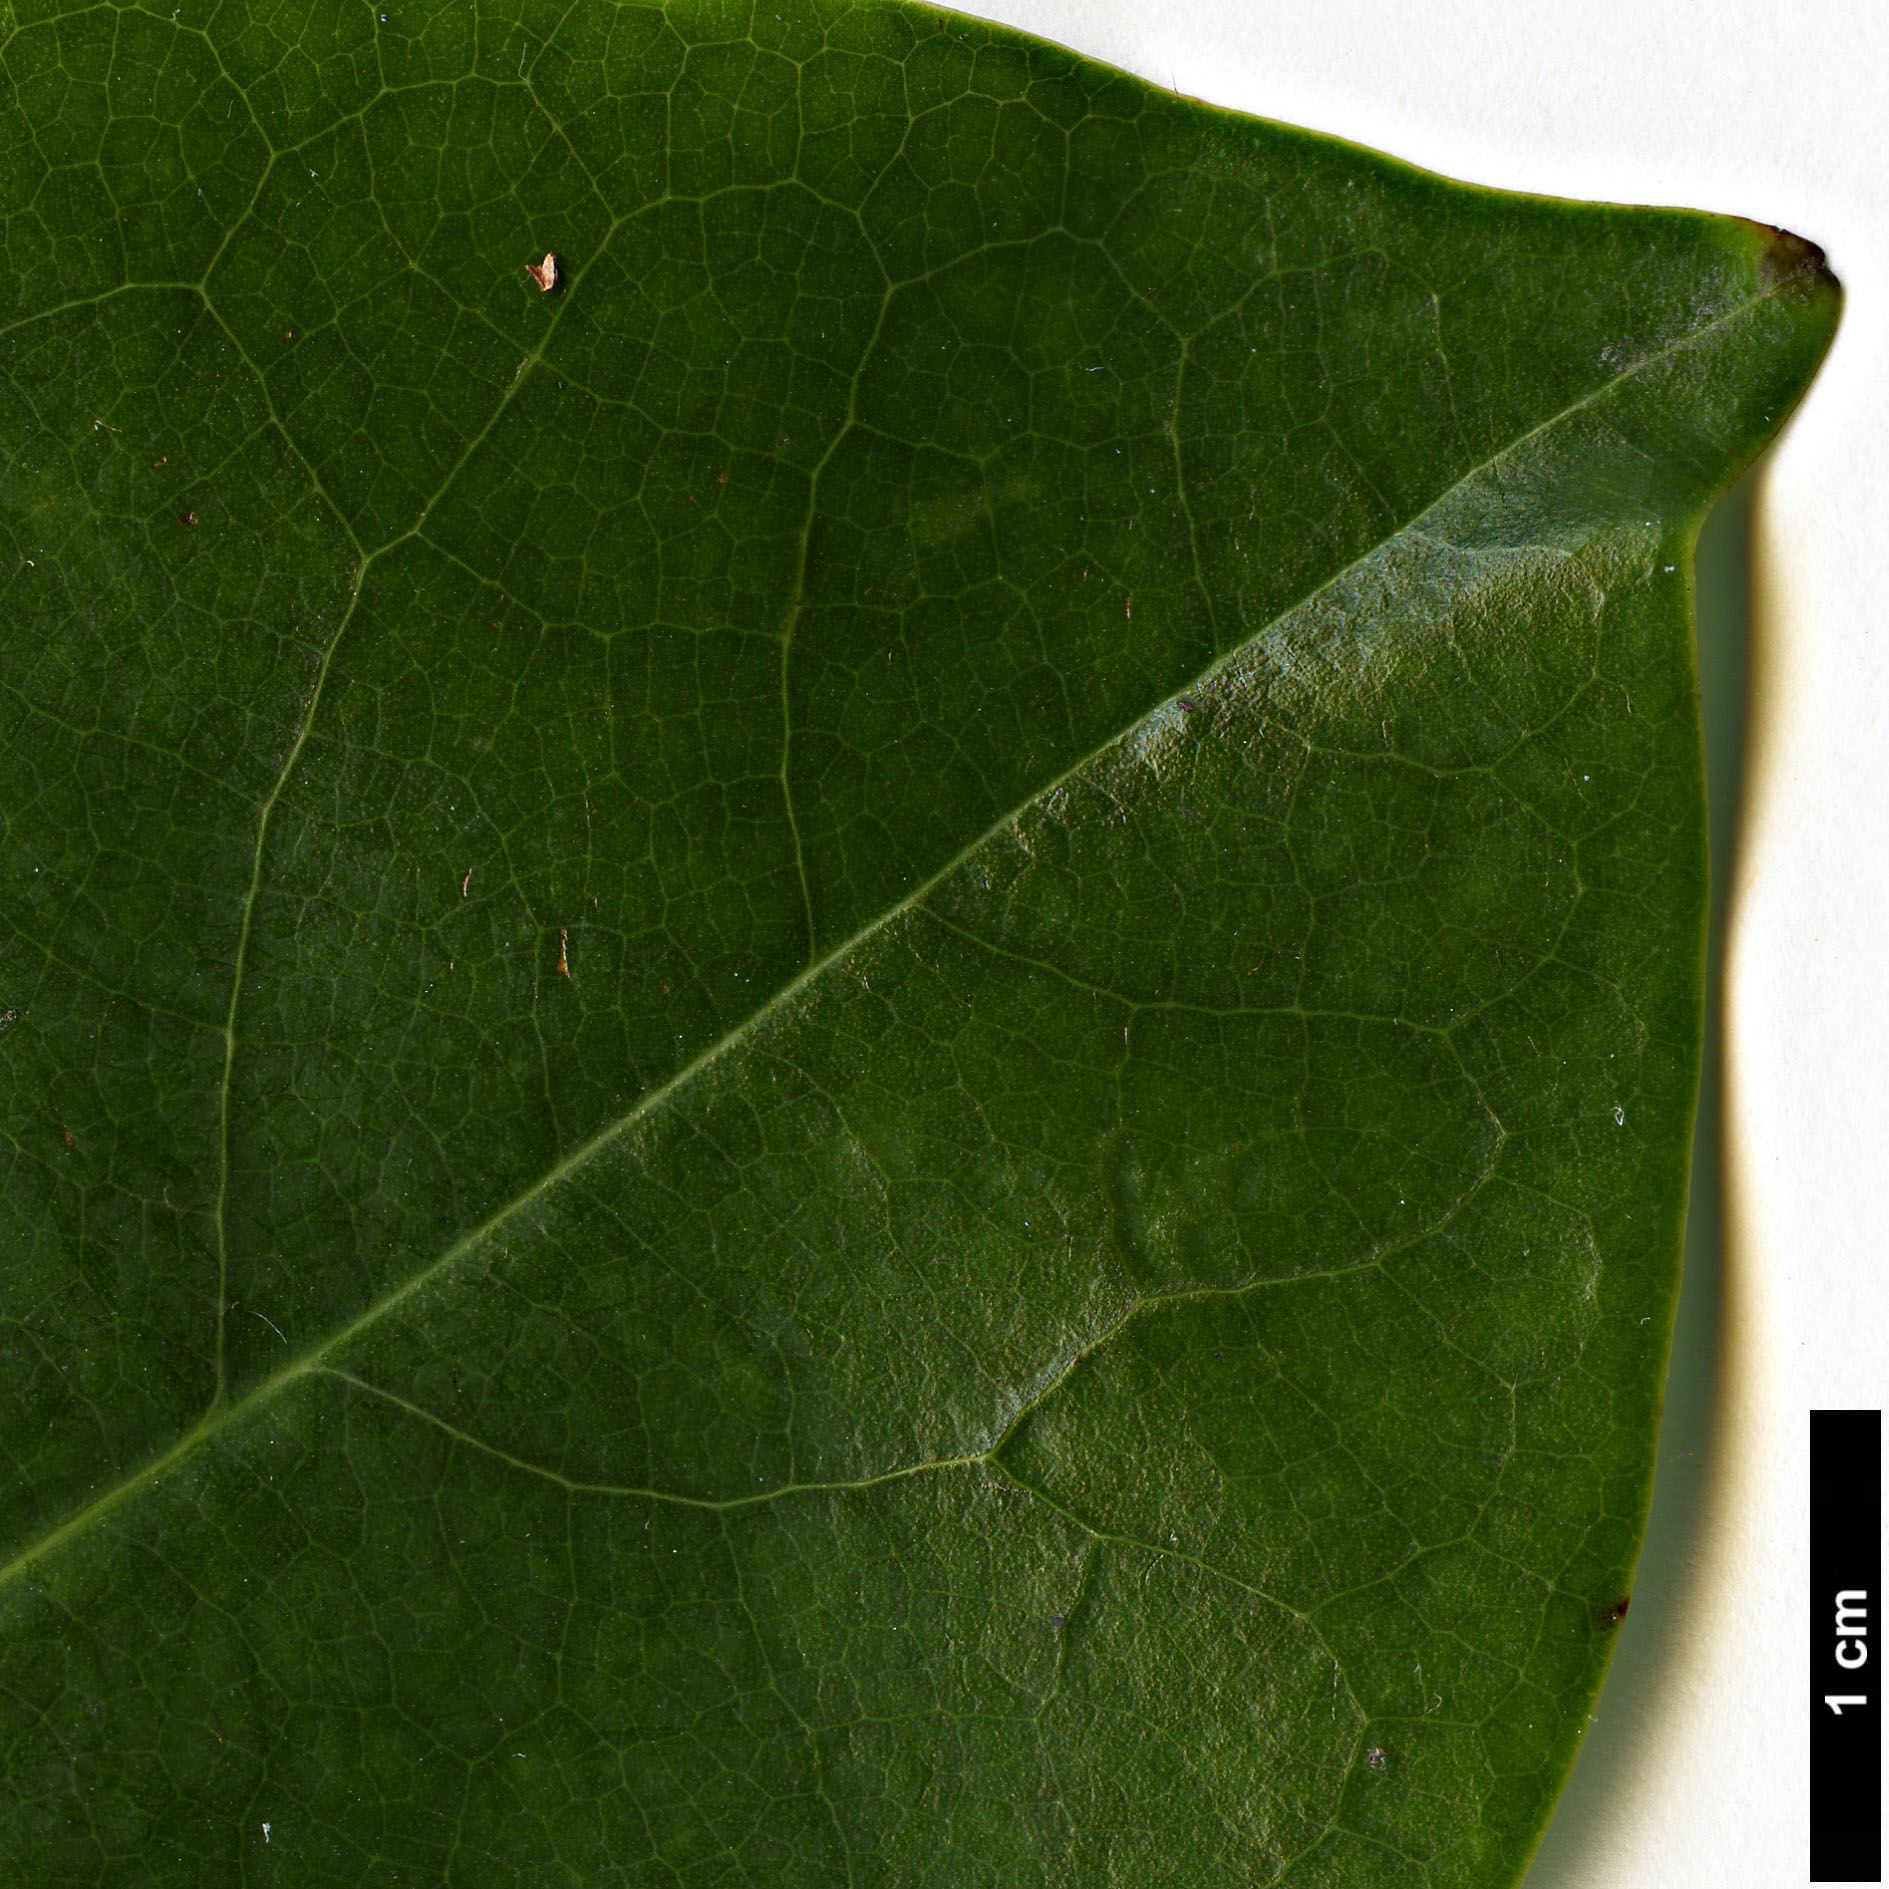 High resolution image: Family: Magnoliaceae - Genus: Magnolia - Taxon: maudiae